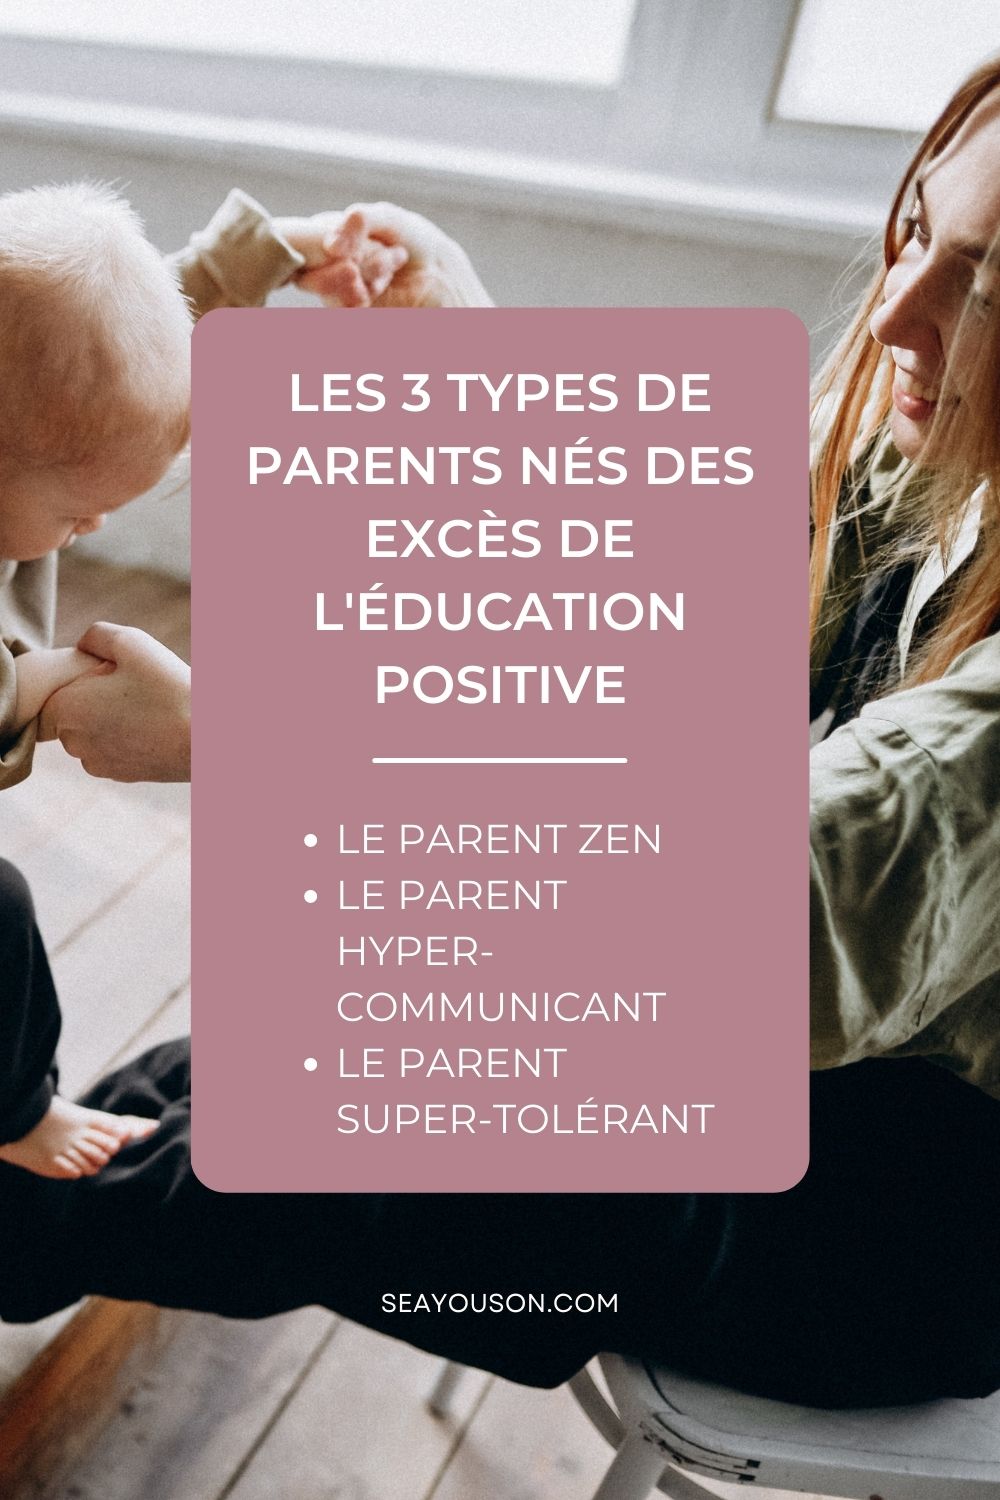 Education positive, attention danger? Les trois types de parents nés des excès de l'éducation positive.